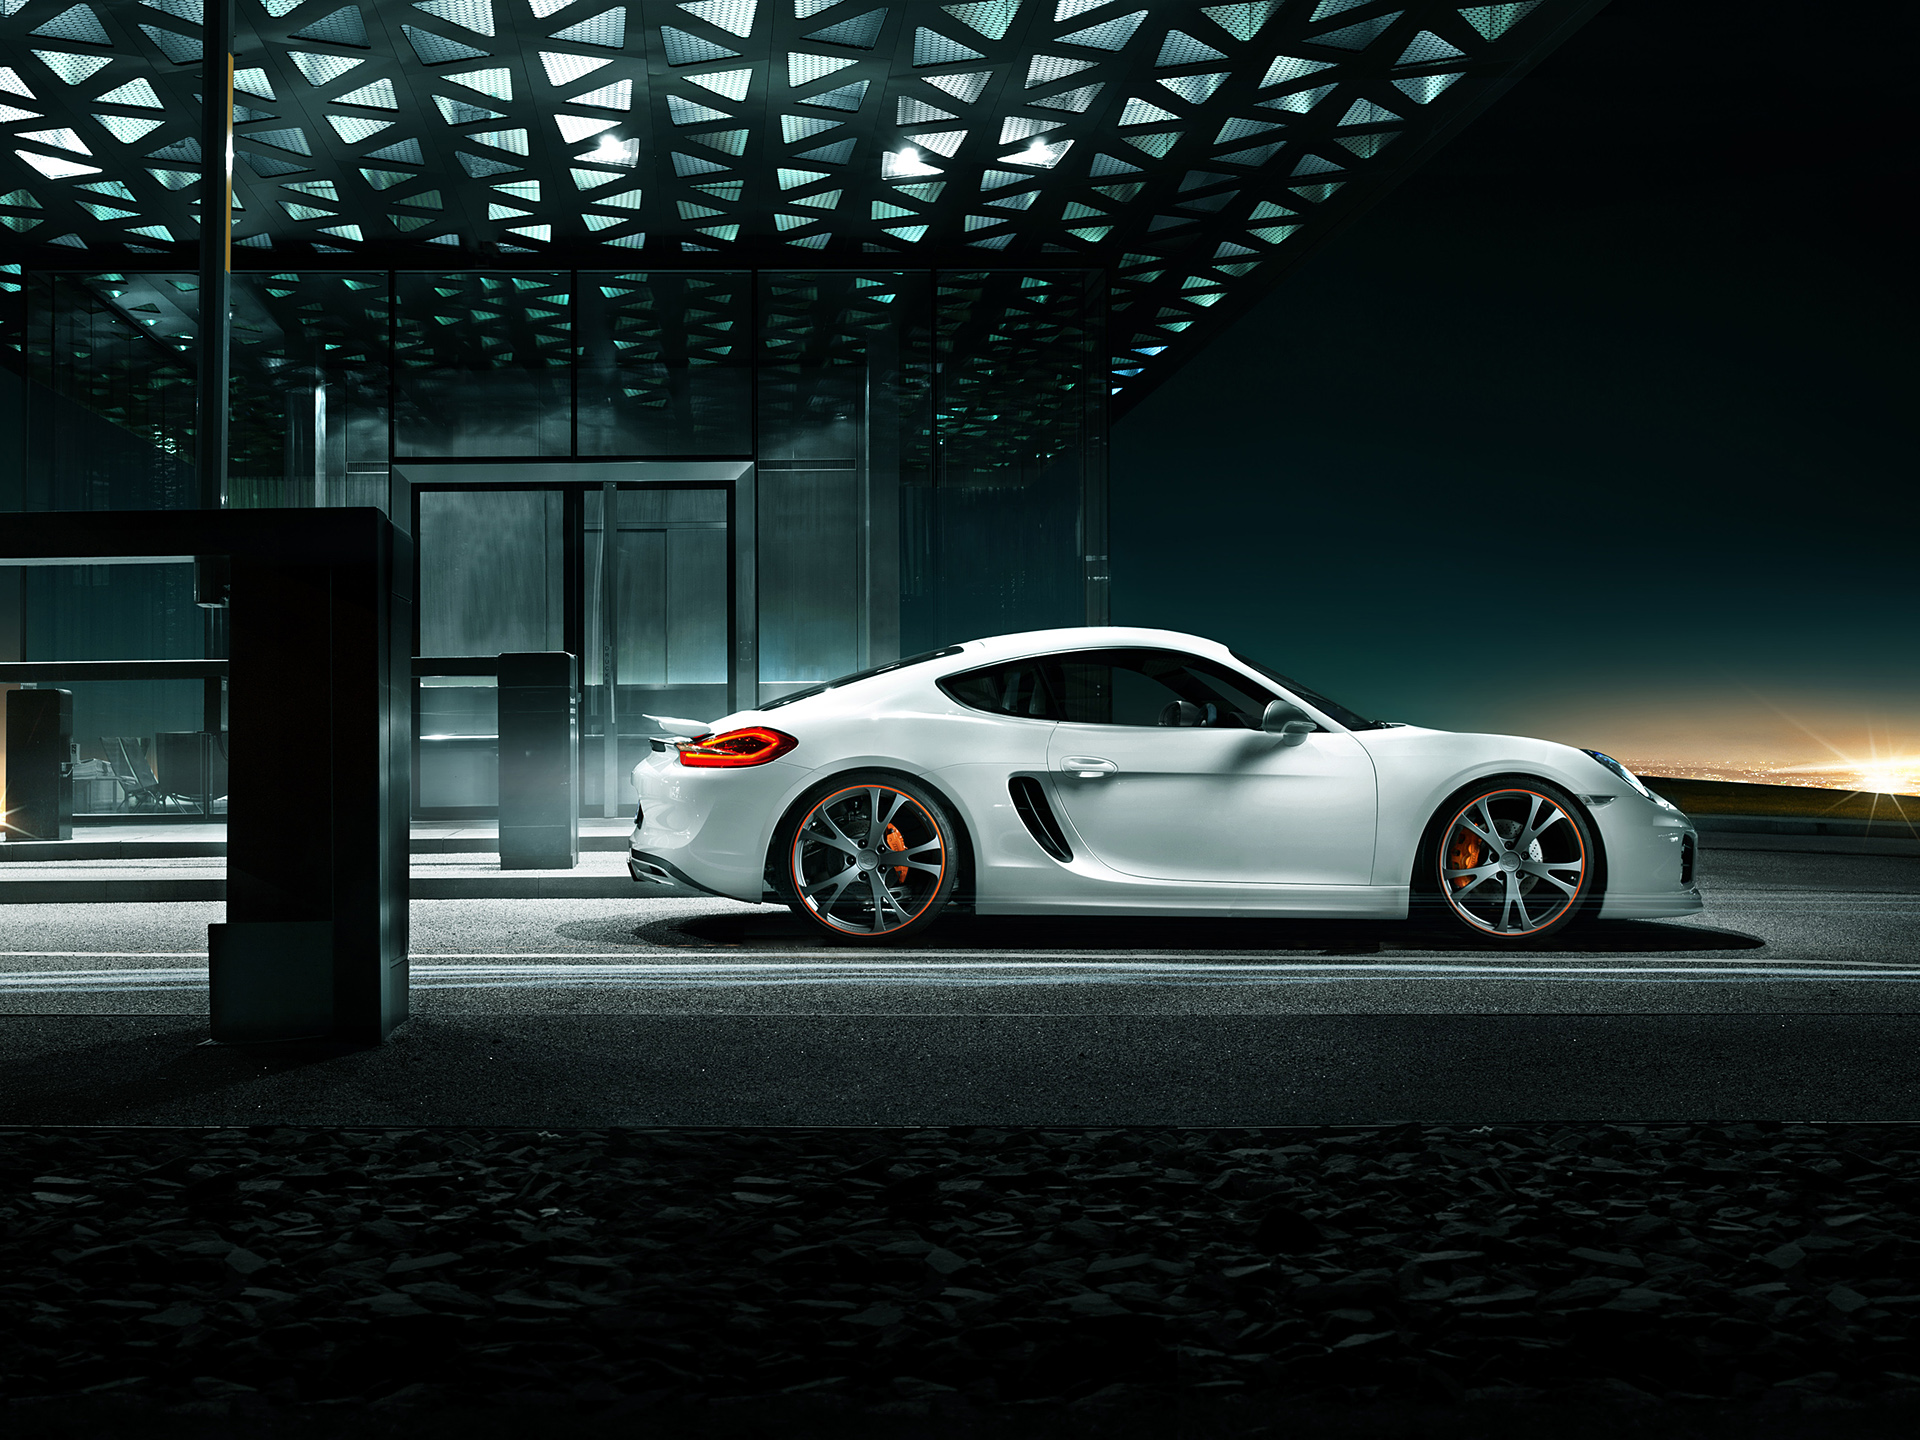  2013 TechArt Porsche Cayman Wallpaper.